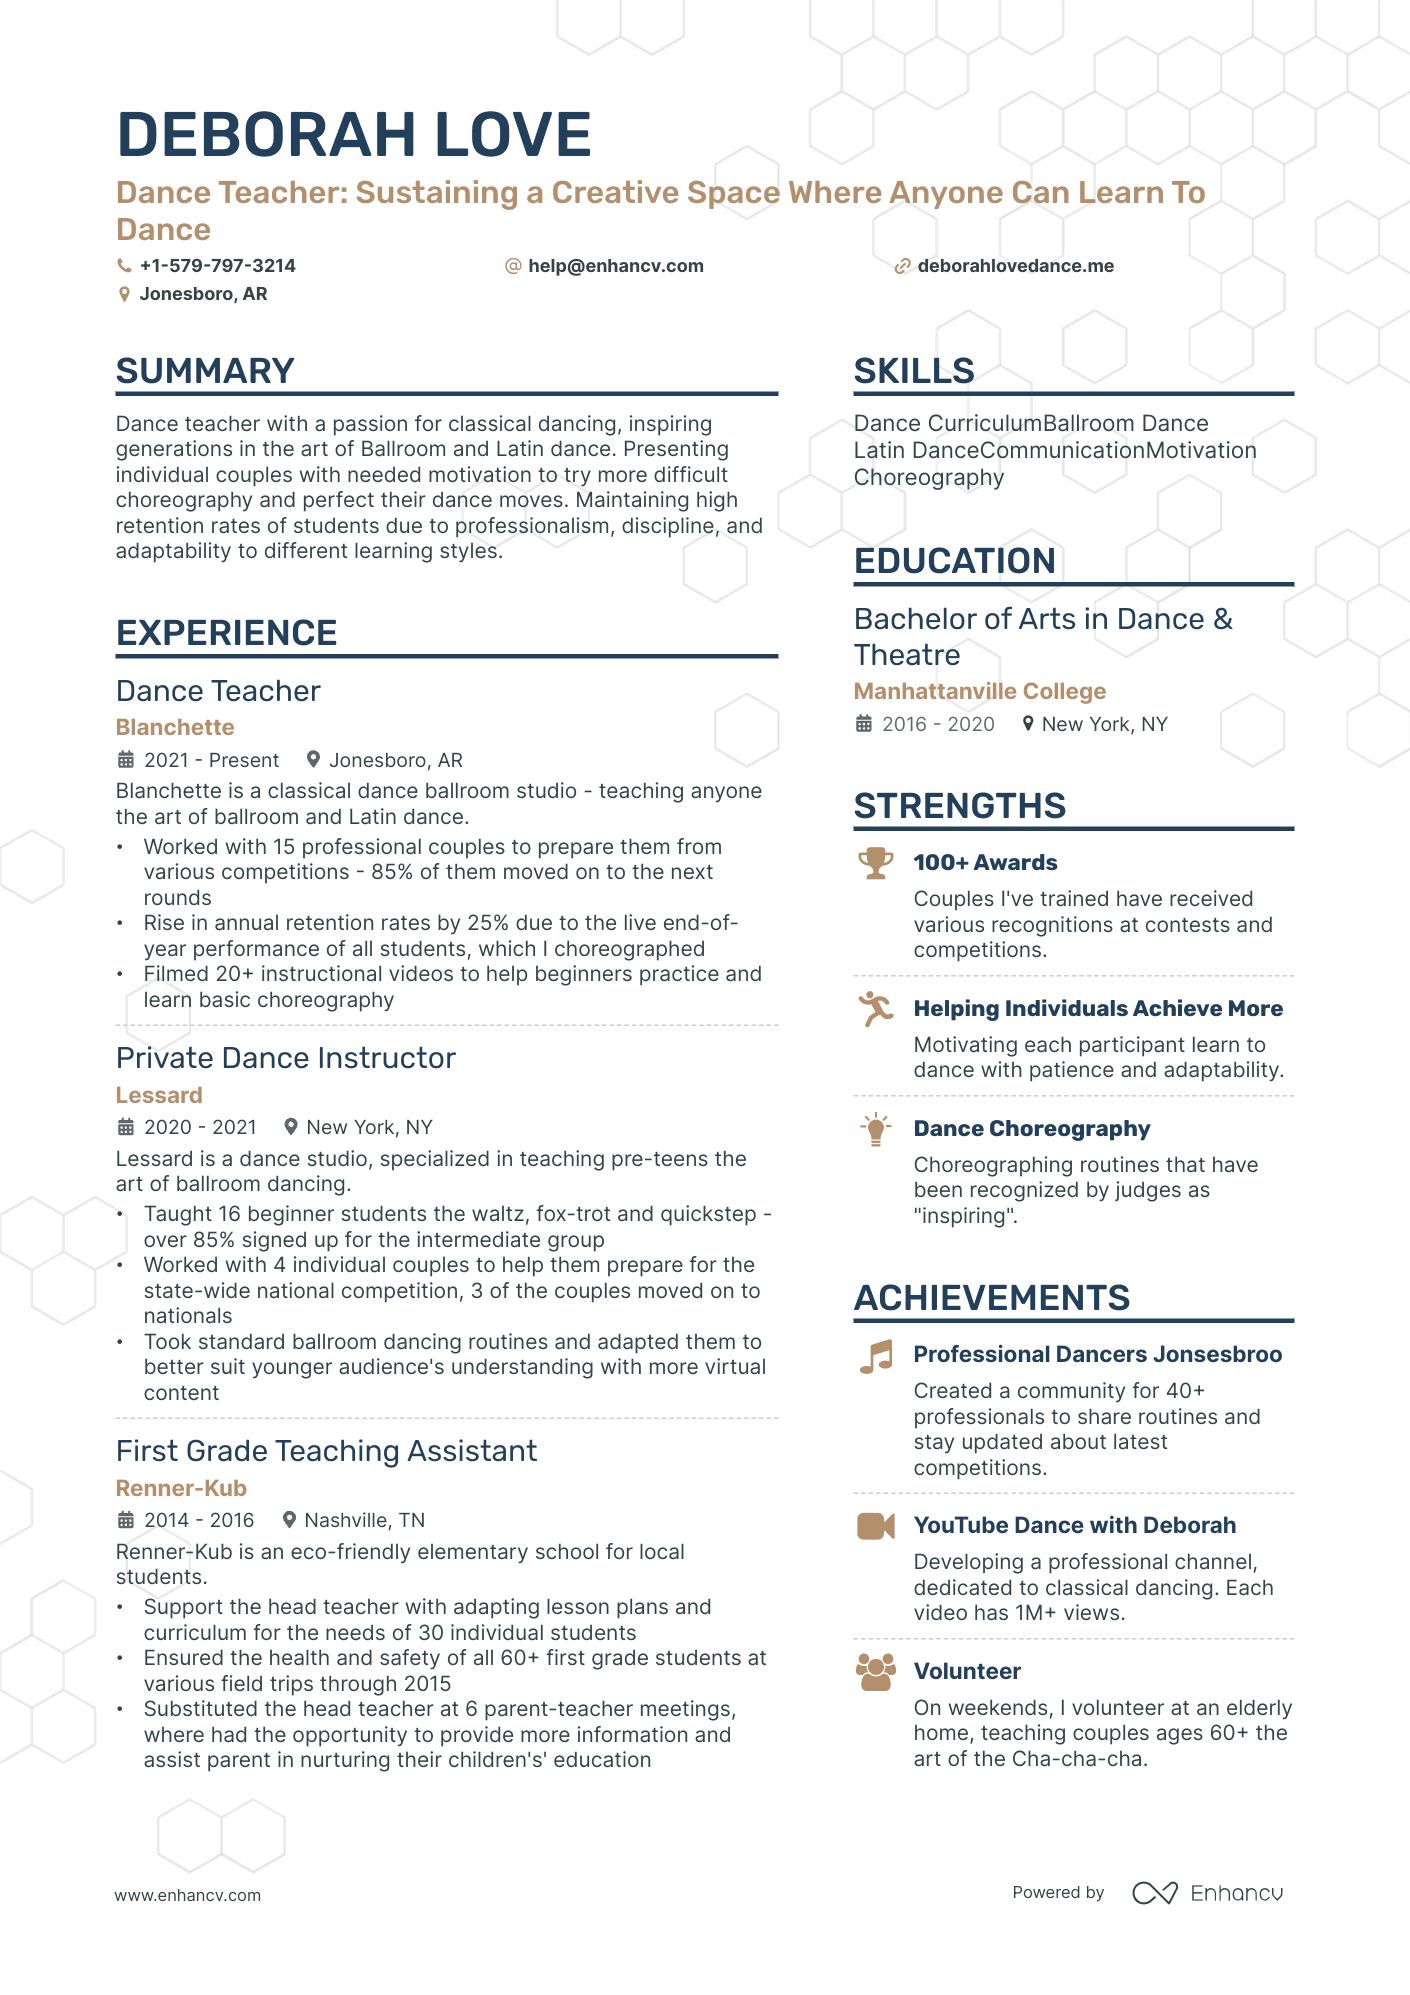 resume preparation for teacher job